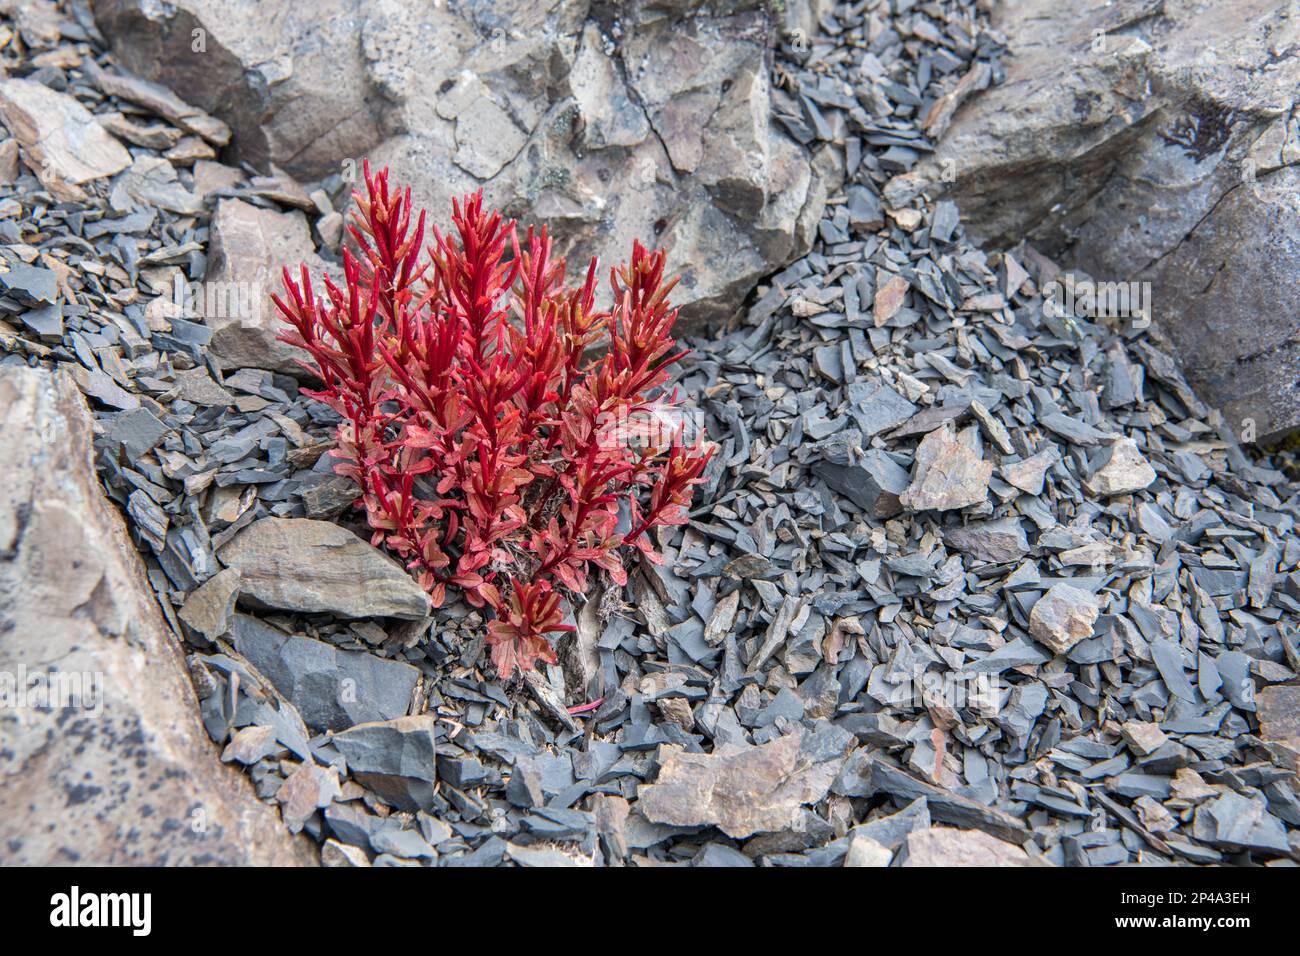 Une plante de willowherb colorée, l'Epilobium, une plante de haute altitude qui pousse dans les Alpes méridionales du parc national des lacs Nelson, à Aotearoa, en Nouvelle-Zélande. Banque D'Images